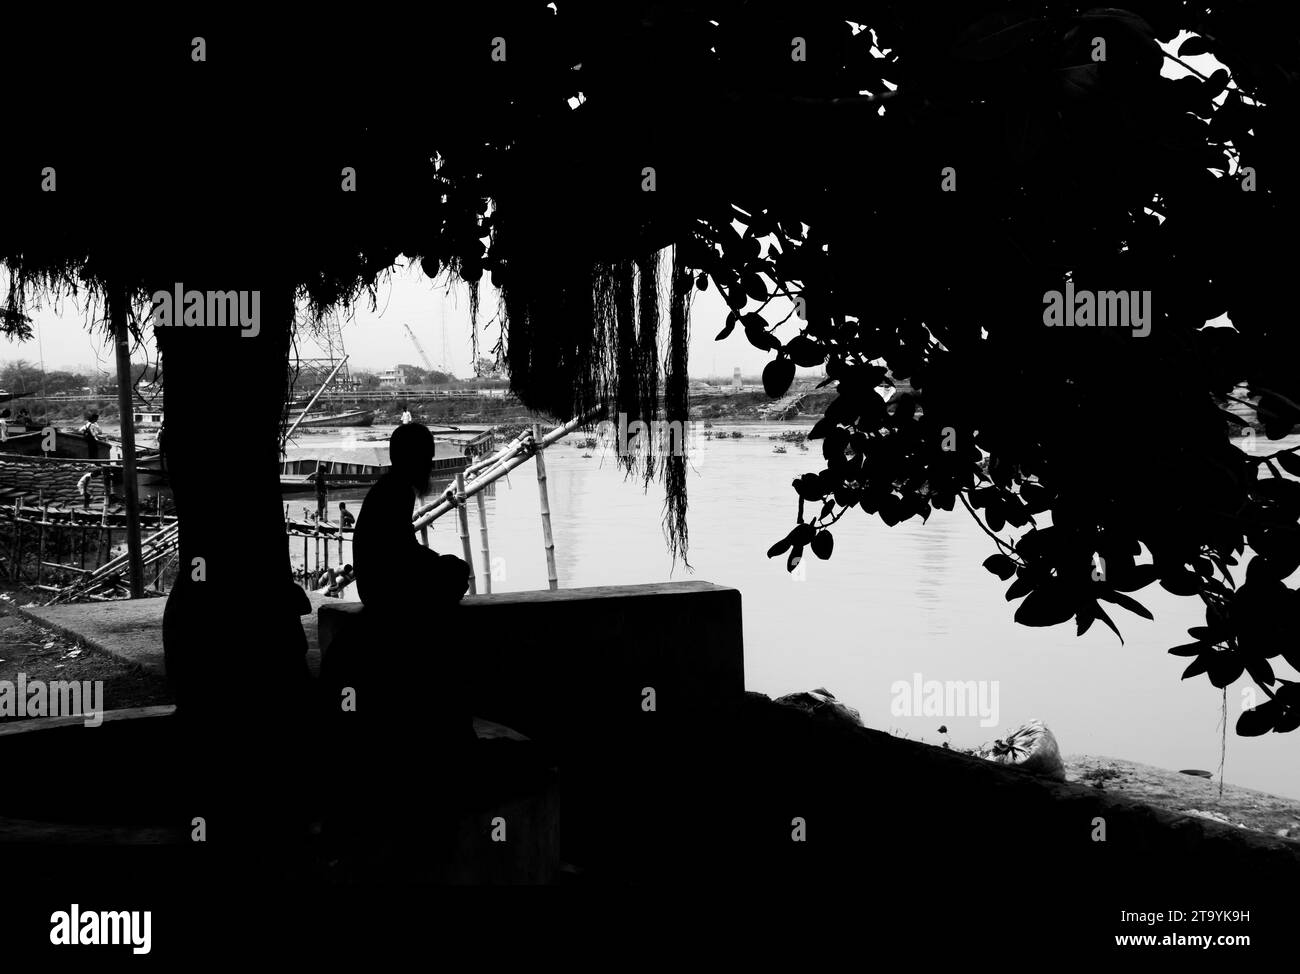 Traditionelle Frachtbootstation am Ufer. Eine malerische Szene entfaltet sich entlang des Flusses von Bangladesch, während traditionelle Frachtschiffe Th finden Stockfoto